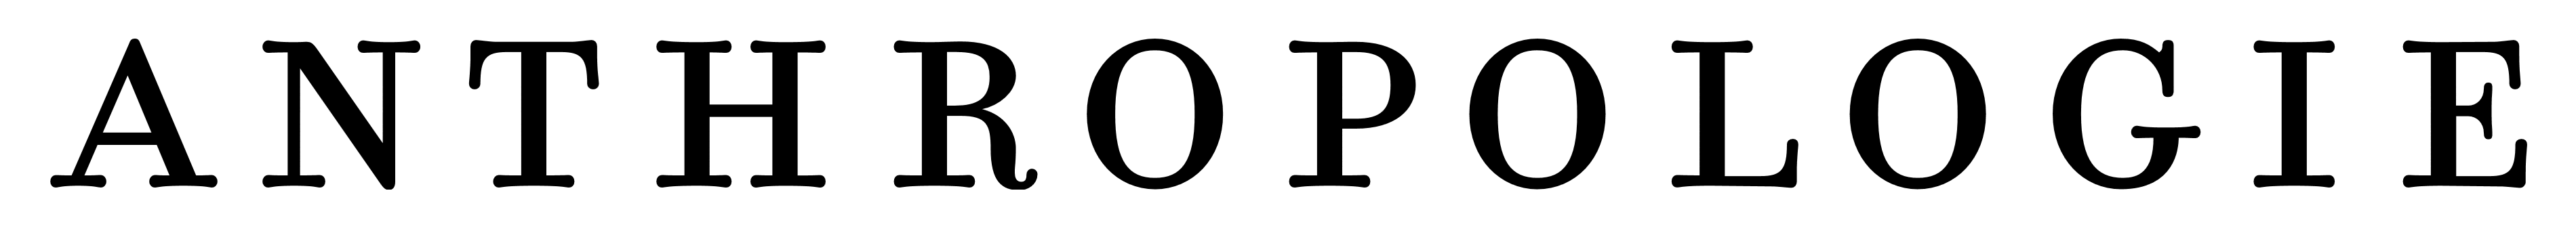 Anthropologie logo, logotype